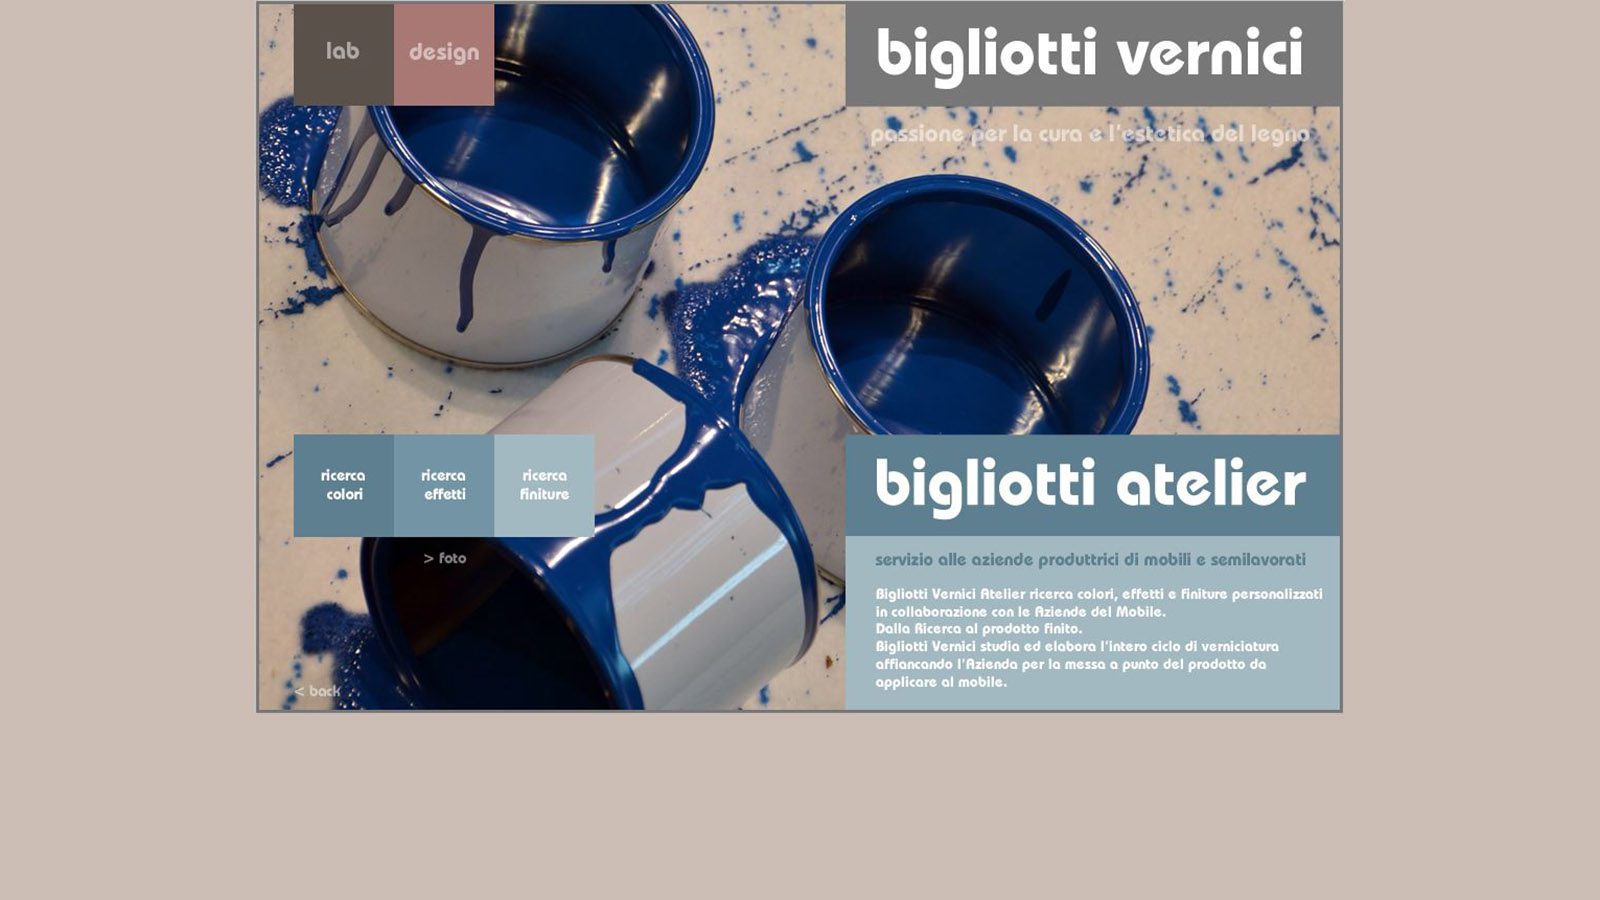 sito-web-bigliotti-vernici-2016-biglitti-atelier